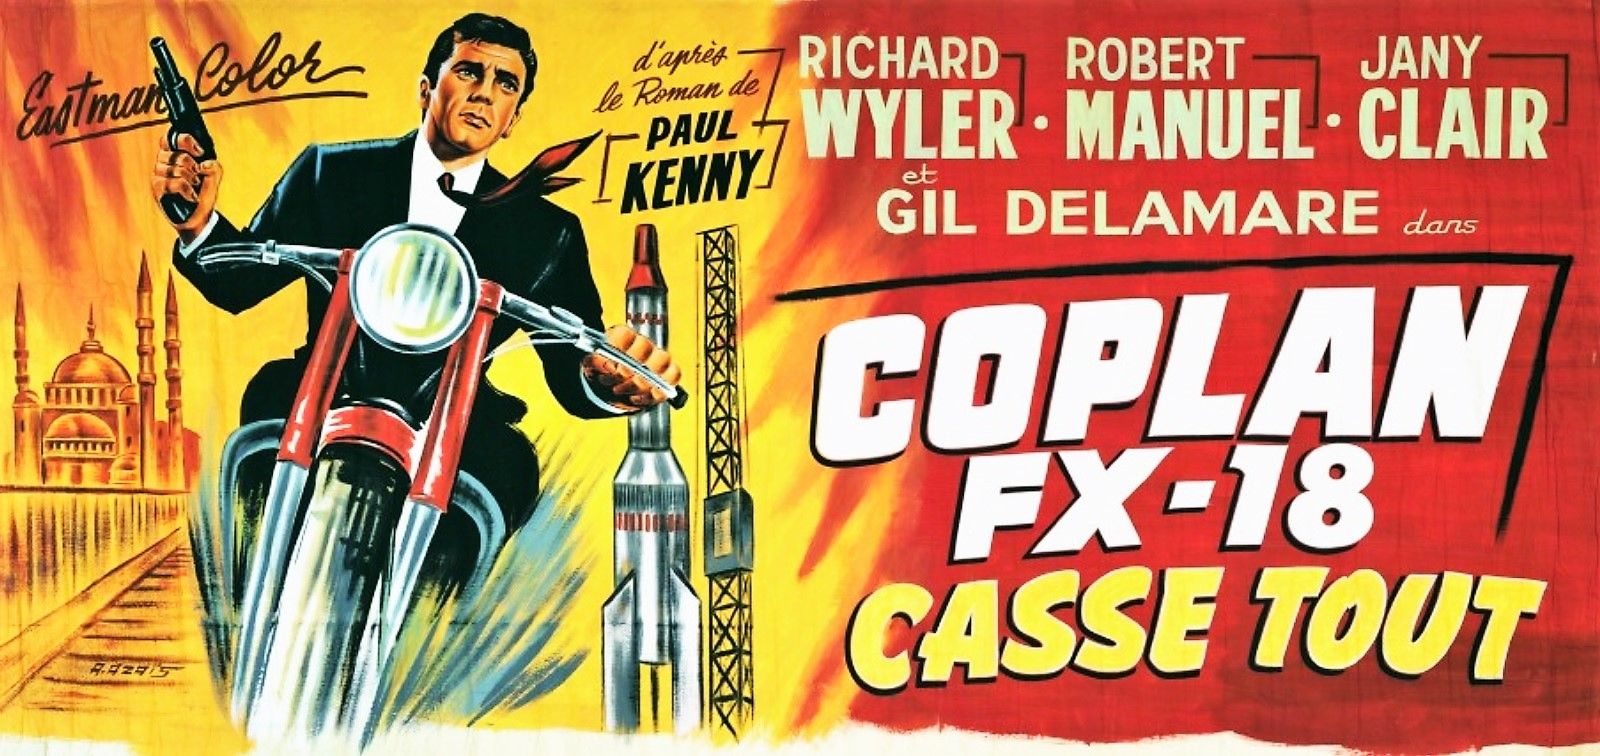 Coplan FX 18 casse tout (1965) Screenshot 2 